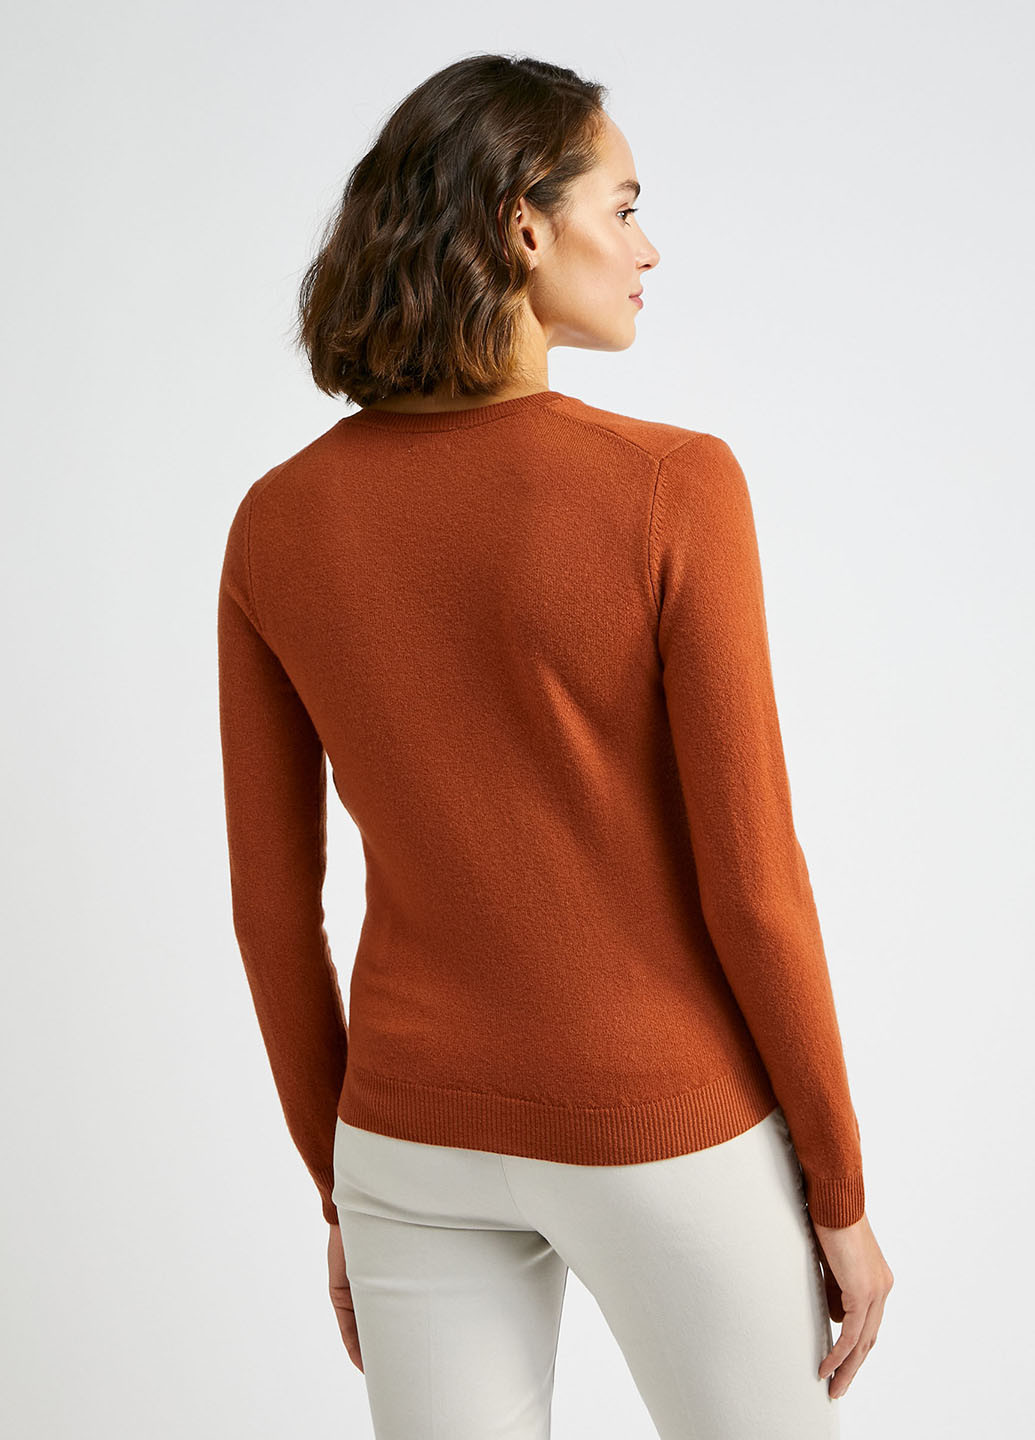 Терракотовый демисезонный пуловер пуловер United Colors of Benetton